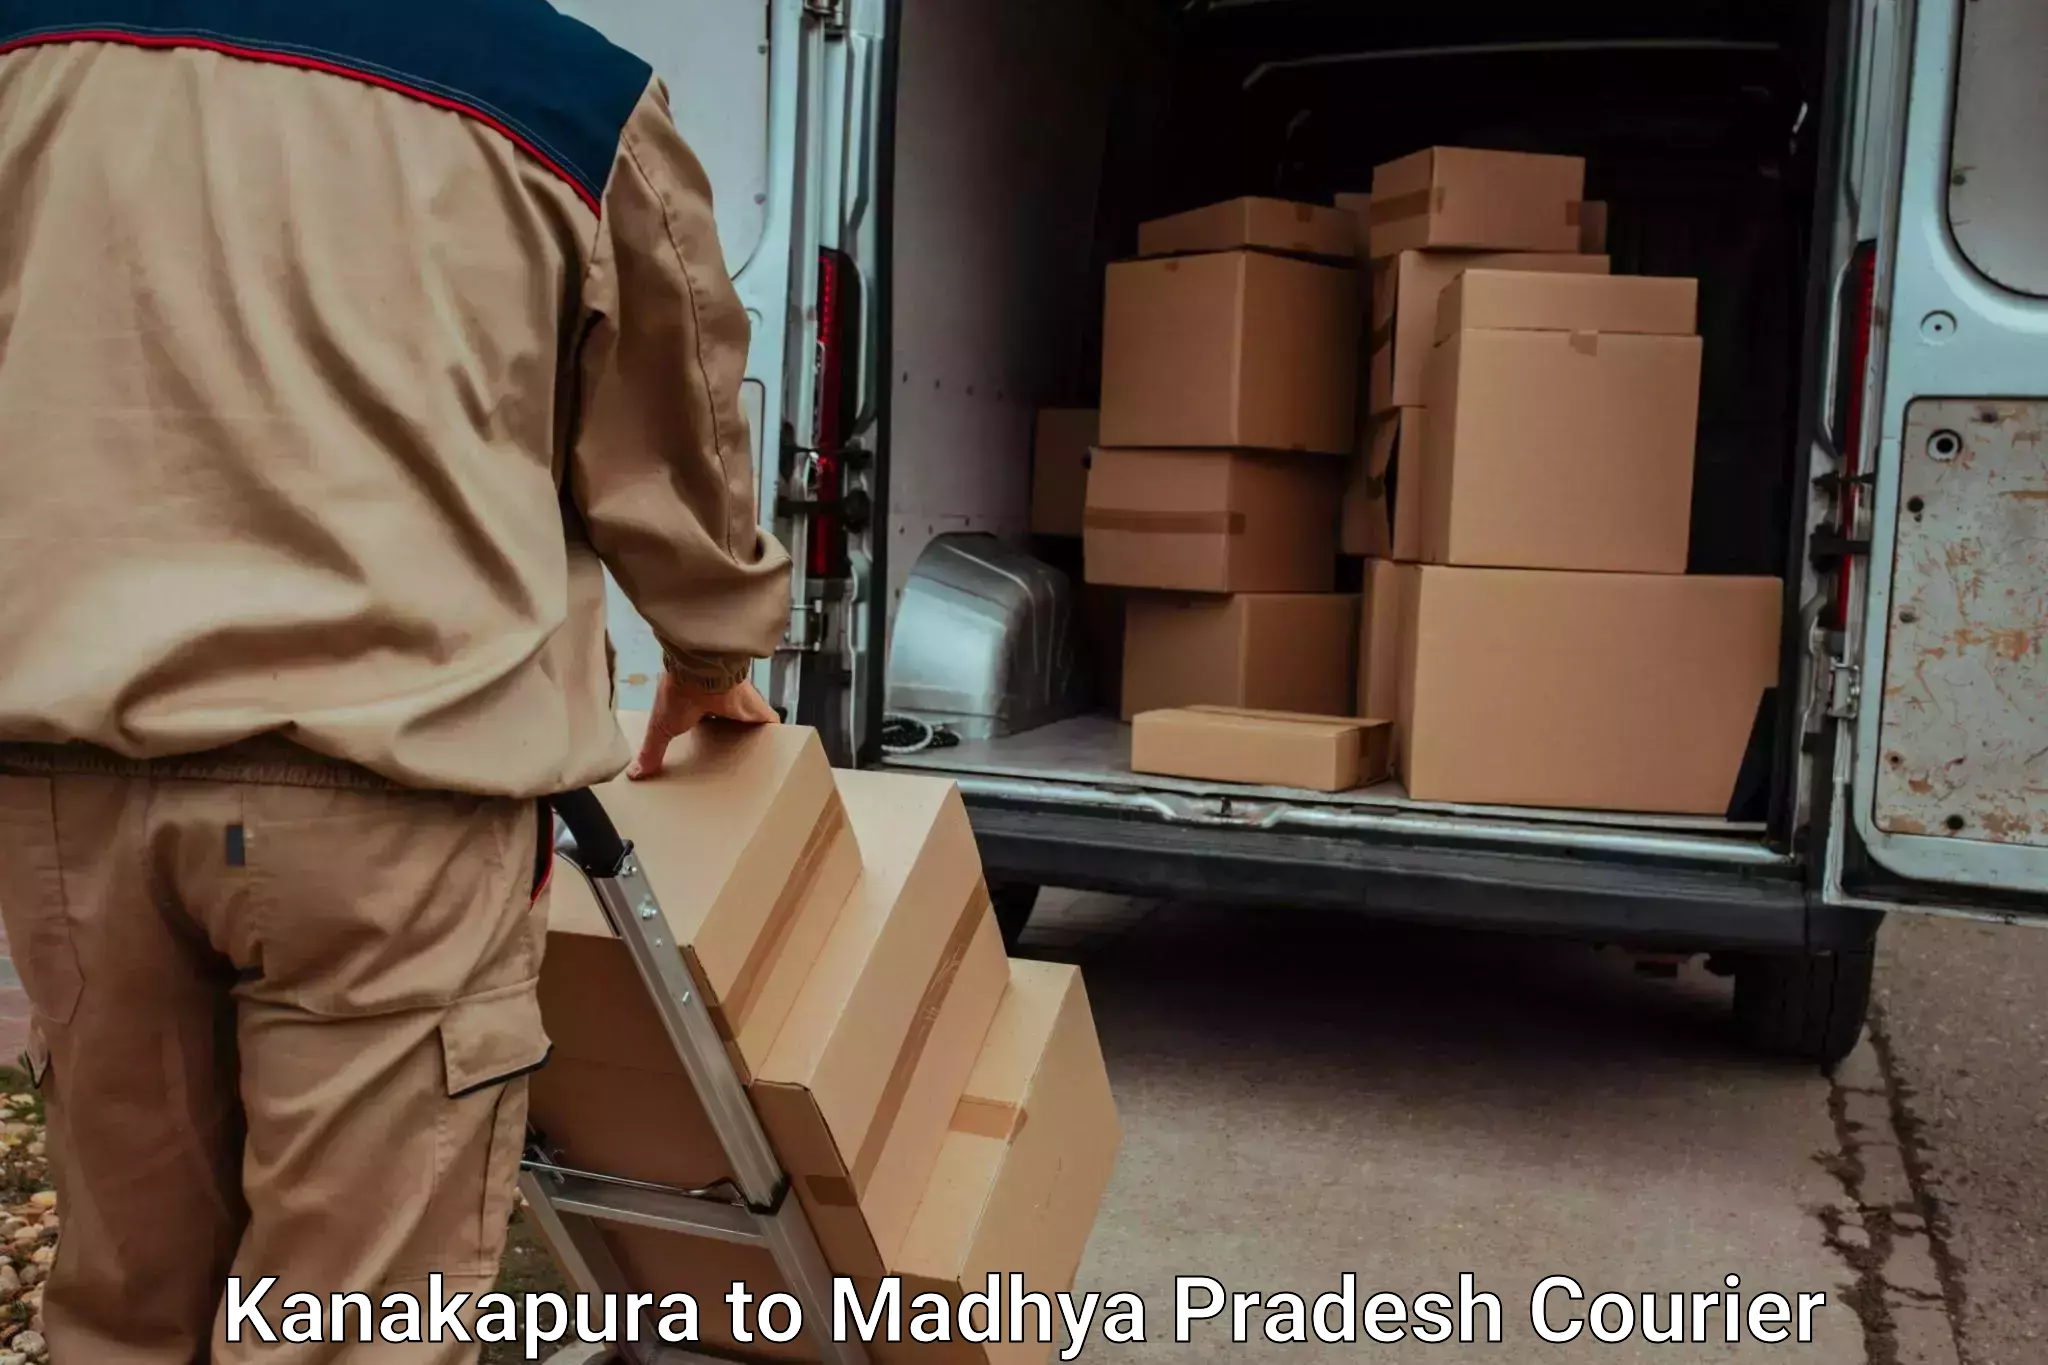 Professional movers and packers Kanakapura to Semariya